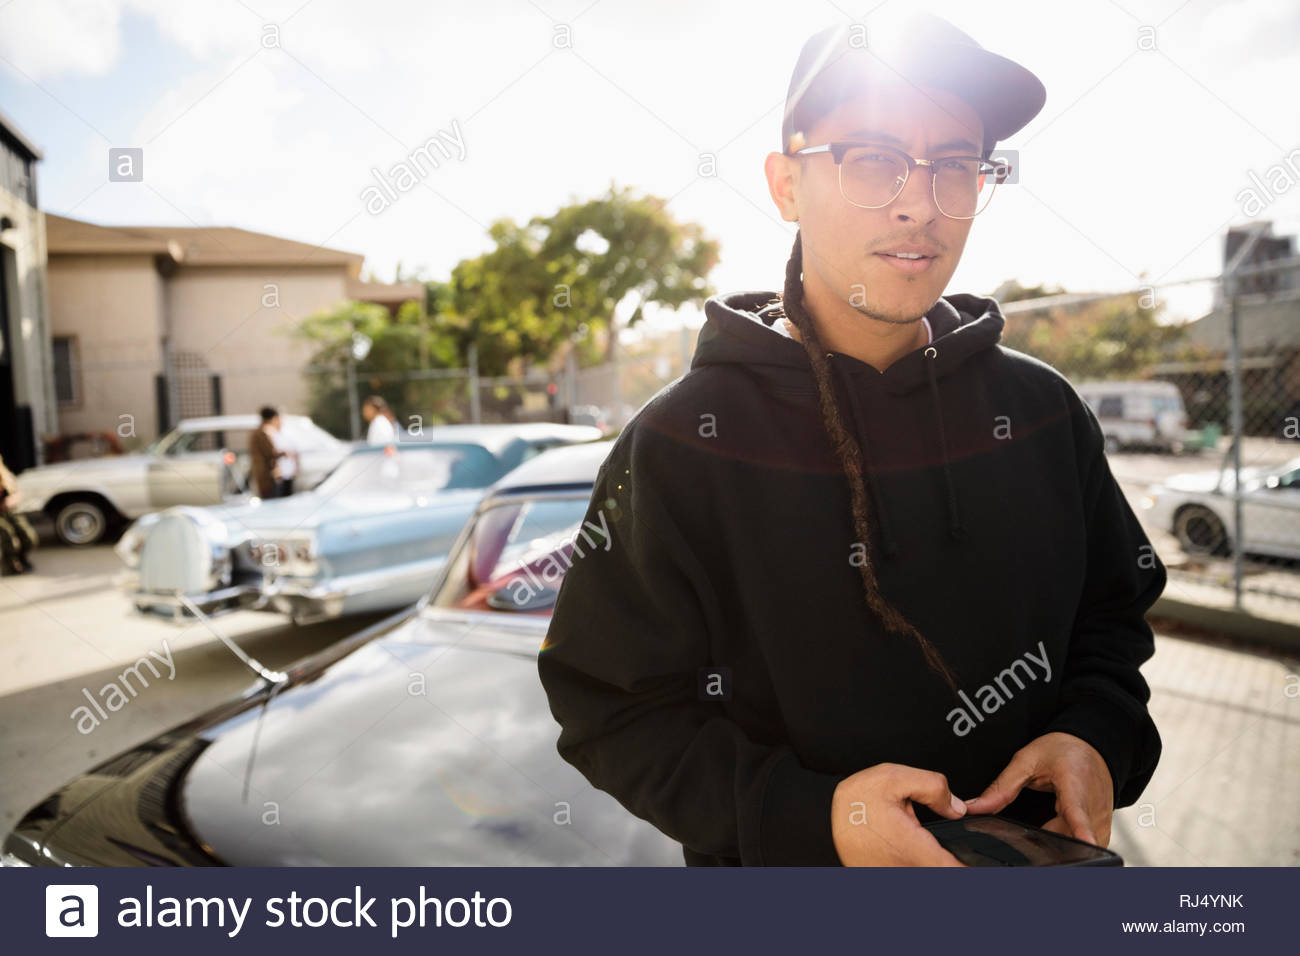 Confiant Latinx Portrait jeune homme avec une longue natte leaning on vintage car parking sous le soleil Banque D'Images